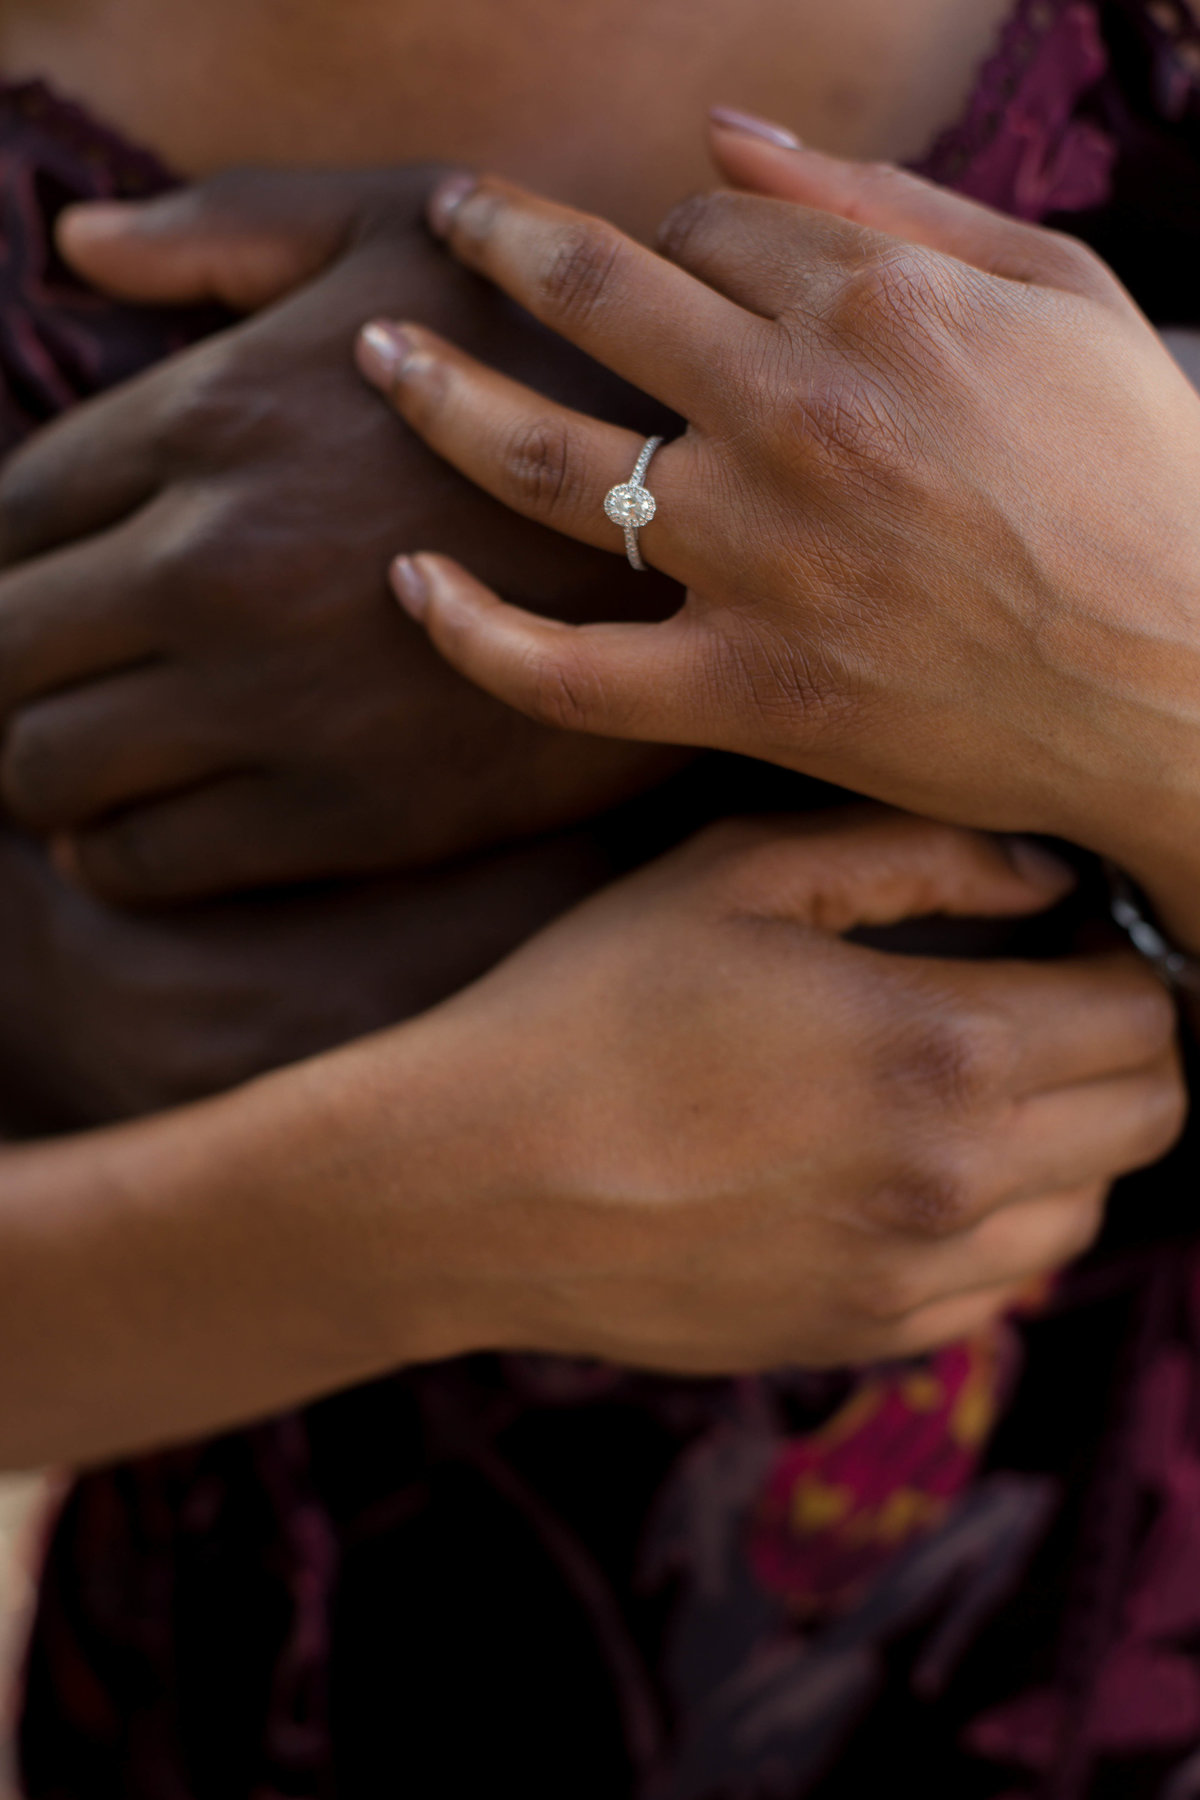 Atlanta wedding photographer take photo of engaged couples new ring